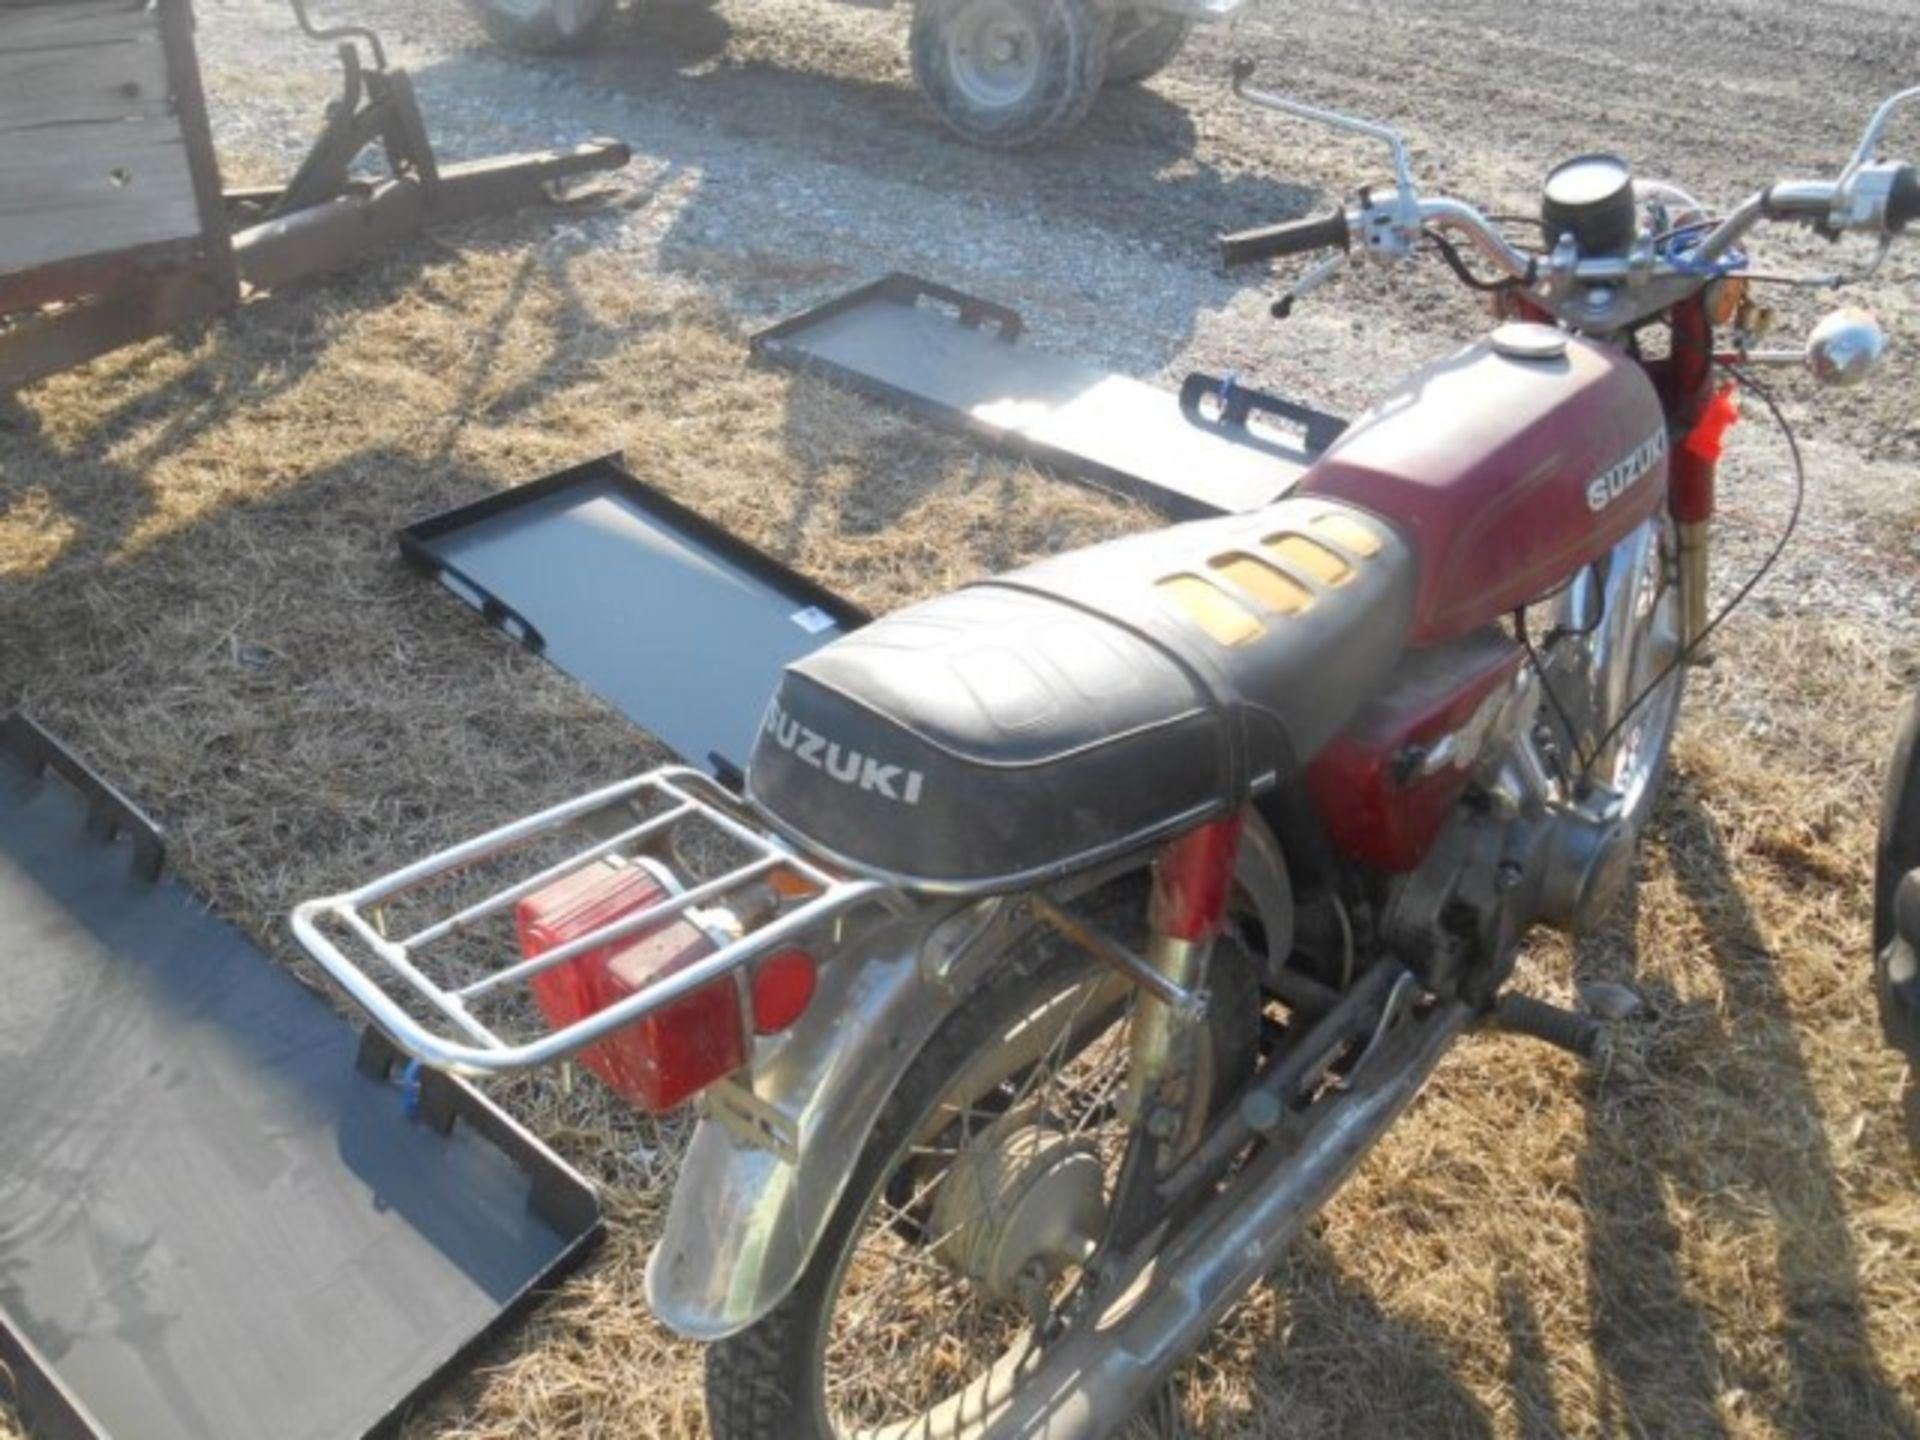 Lot #22563 Kawasaki Gofer 100 Dirt Bike - Image 4 of 4